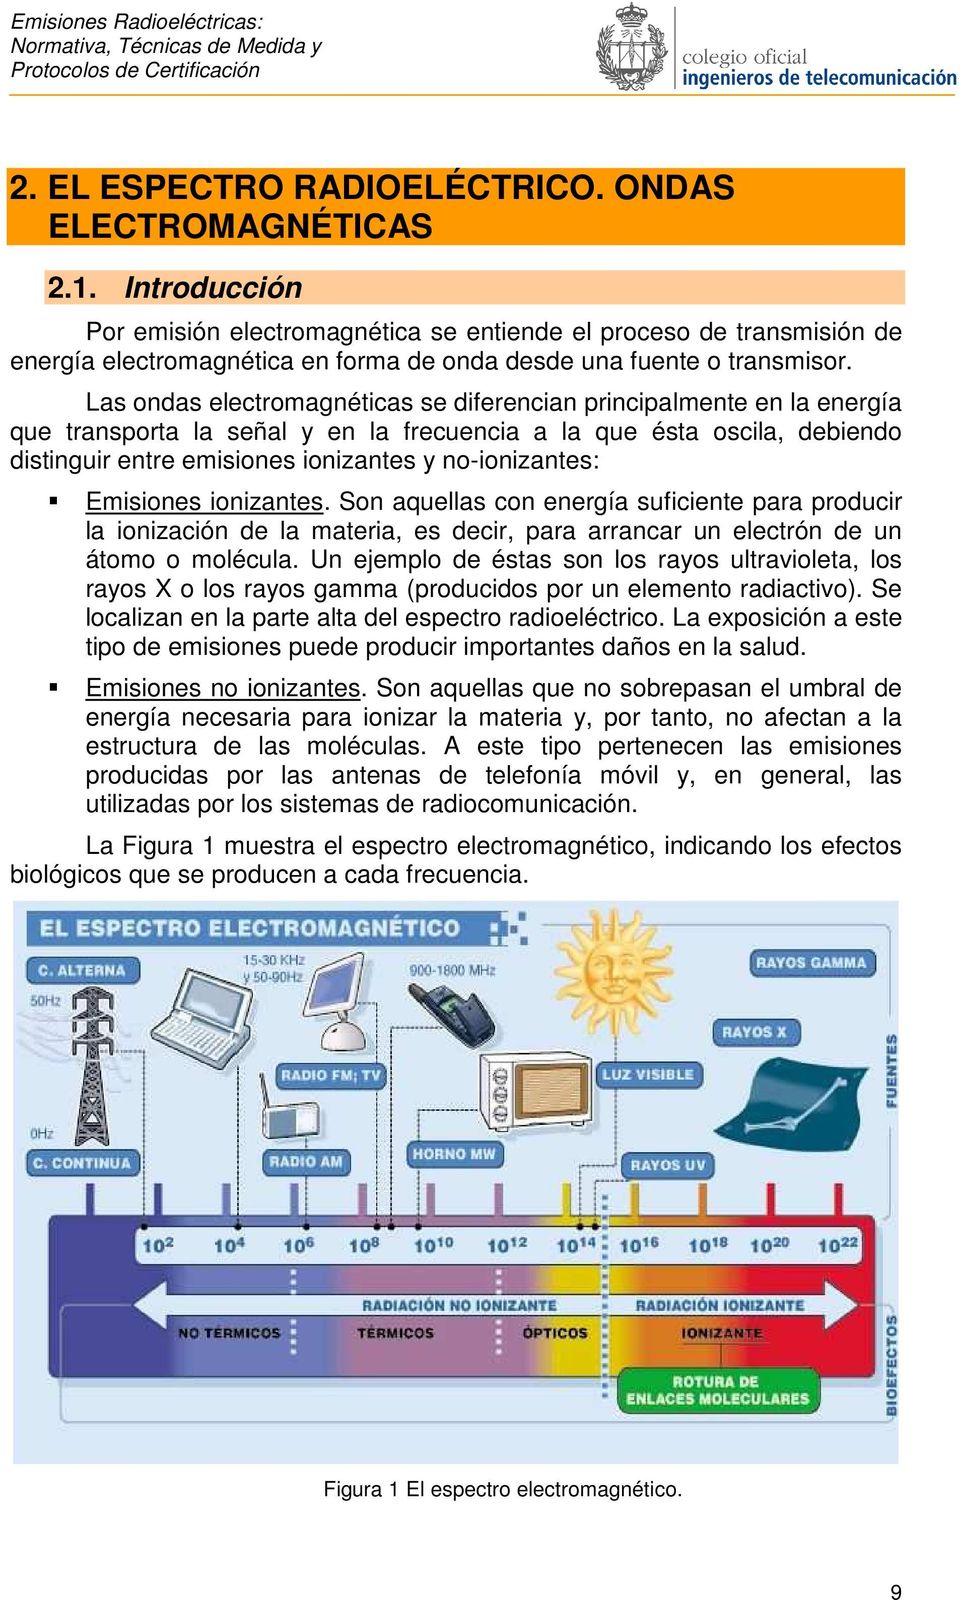 Las ondas electromagnéticas se diferencian principalmente en la energía que transporta la señal y en la frecuencia a la que ésta oscila, debiendo distinguir entre emisiones ionizantes y